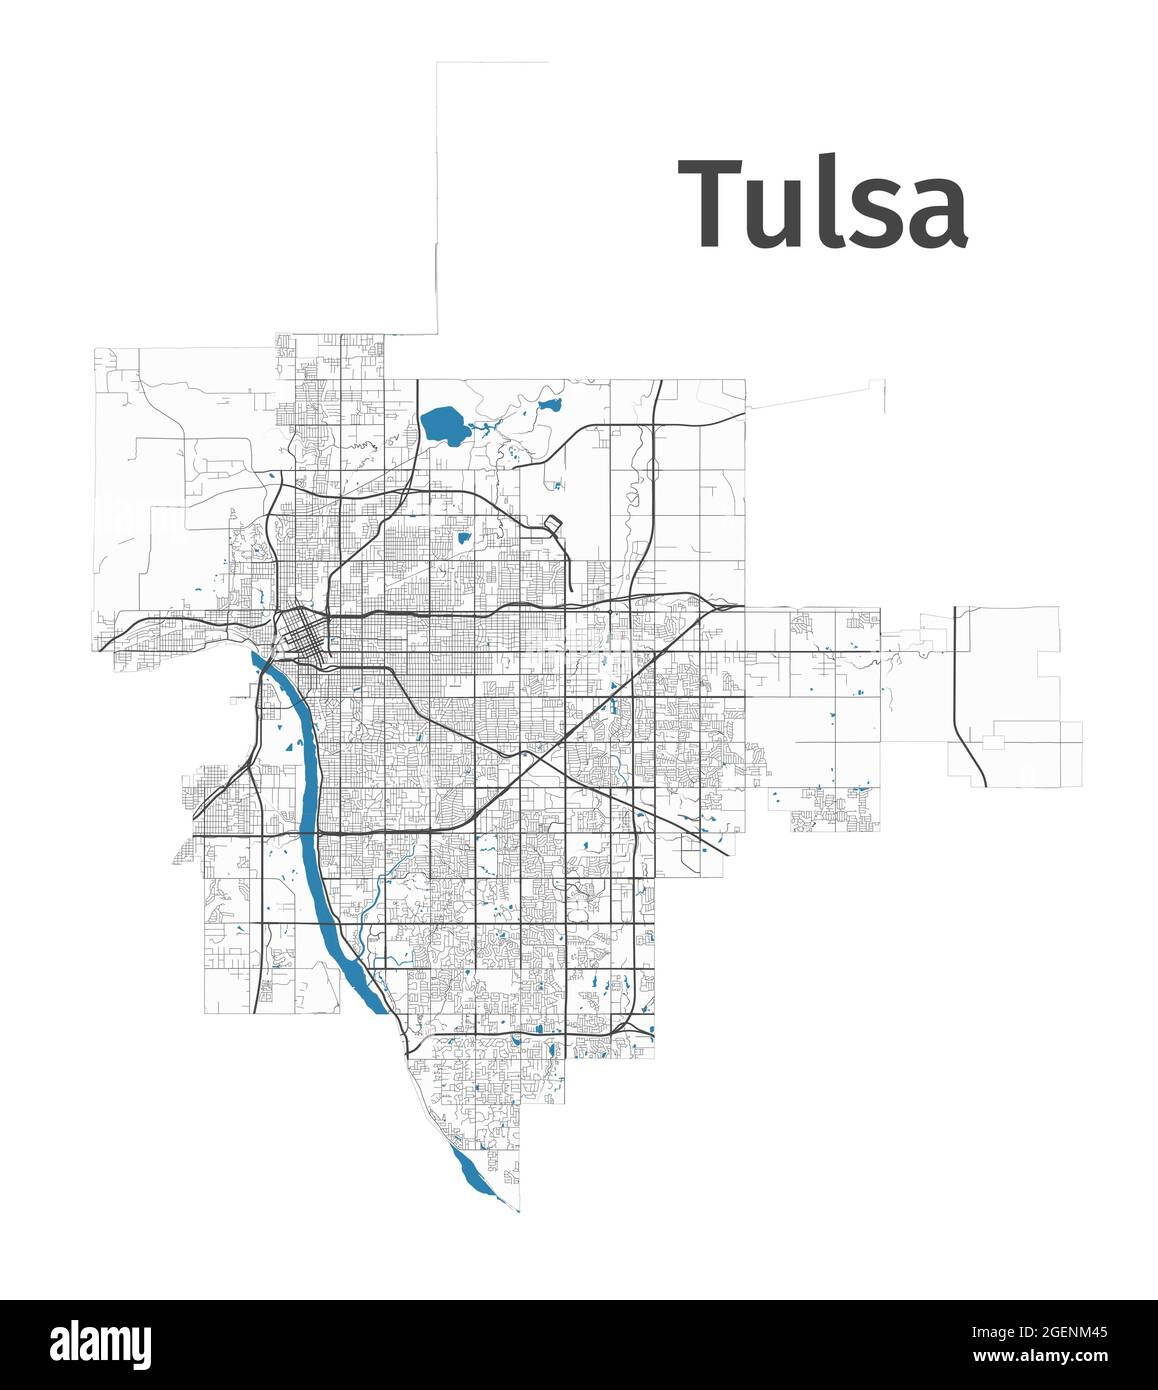 Mappa di Tulsa. Mappa dettagliata dell'area amministrativa della città di Tulsa. Panorama urbano. Illustrazione vettoriale senza royalty. Mappa del profilo con autostrade, strade, r Illustrazione Vettoriale